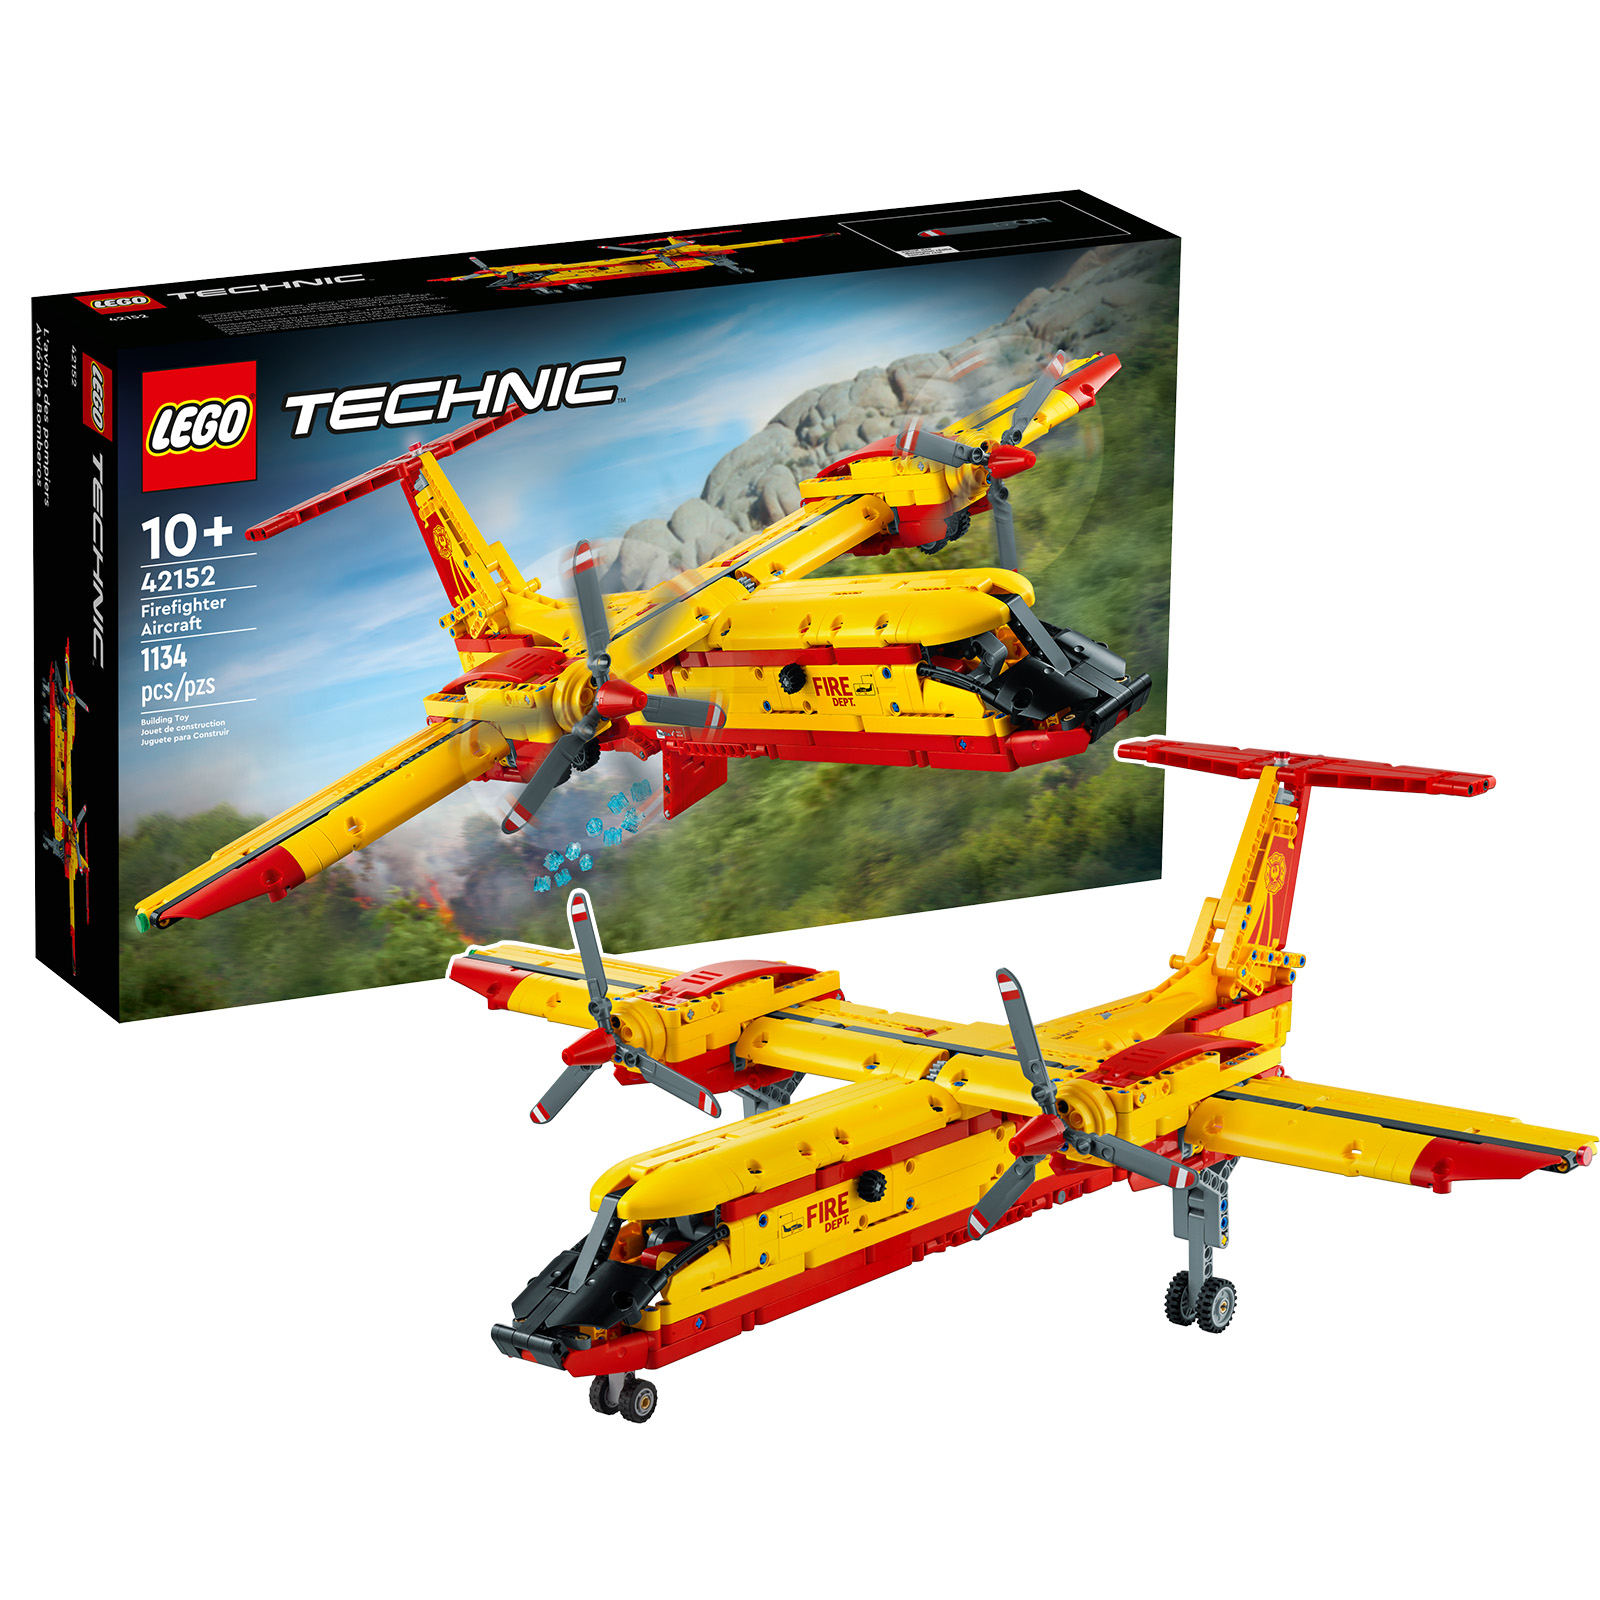 Во продавницата LEGO: комплетот LEGO Technic 42152 Firefighter Aircraft е на претходна нарачка